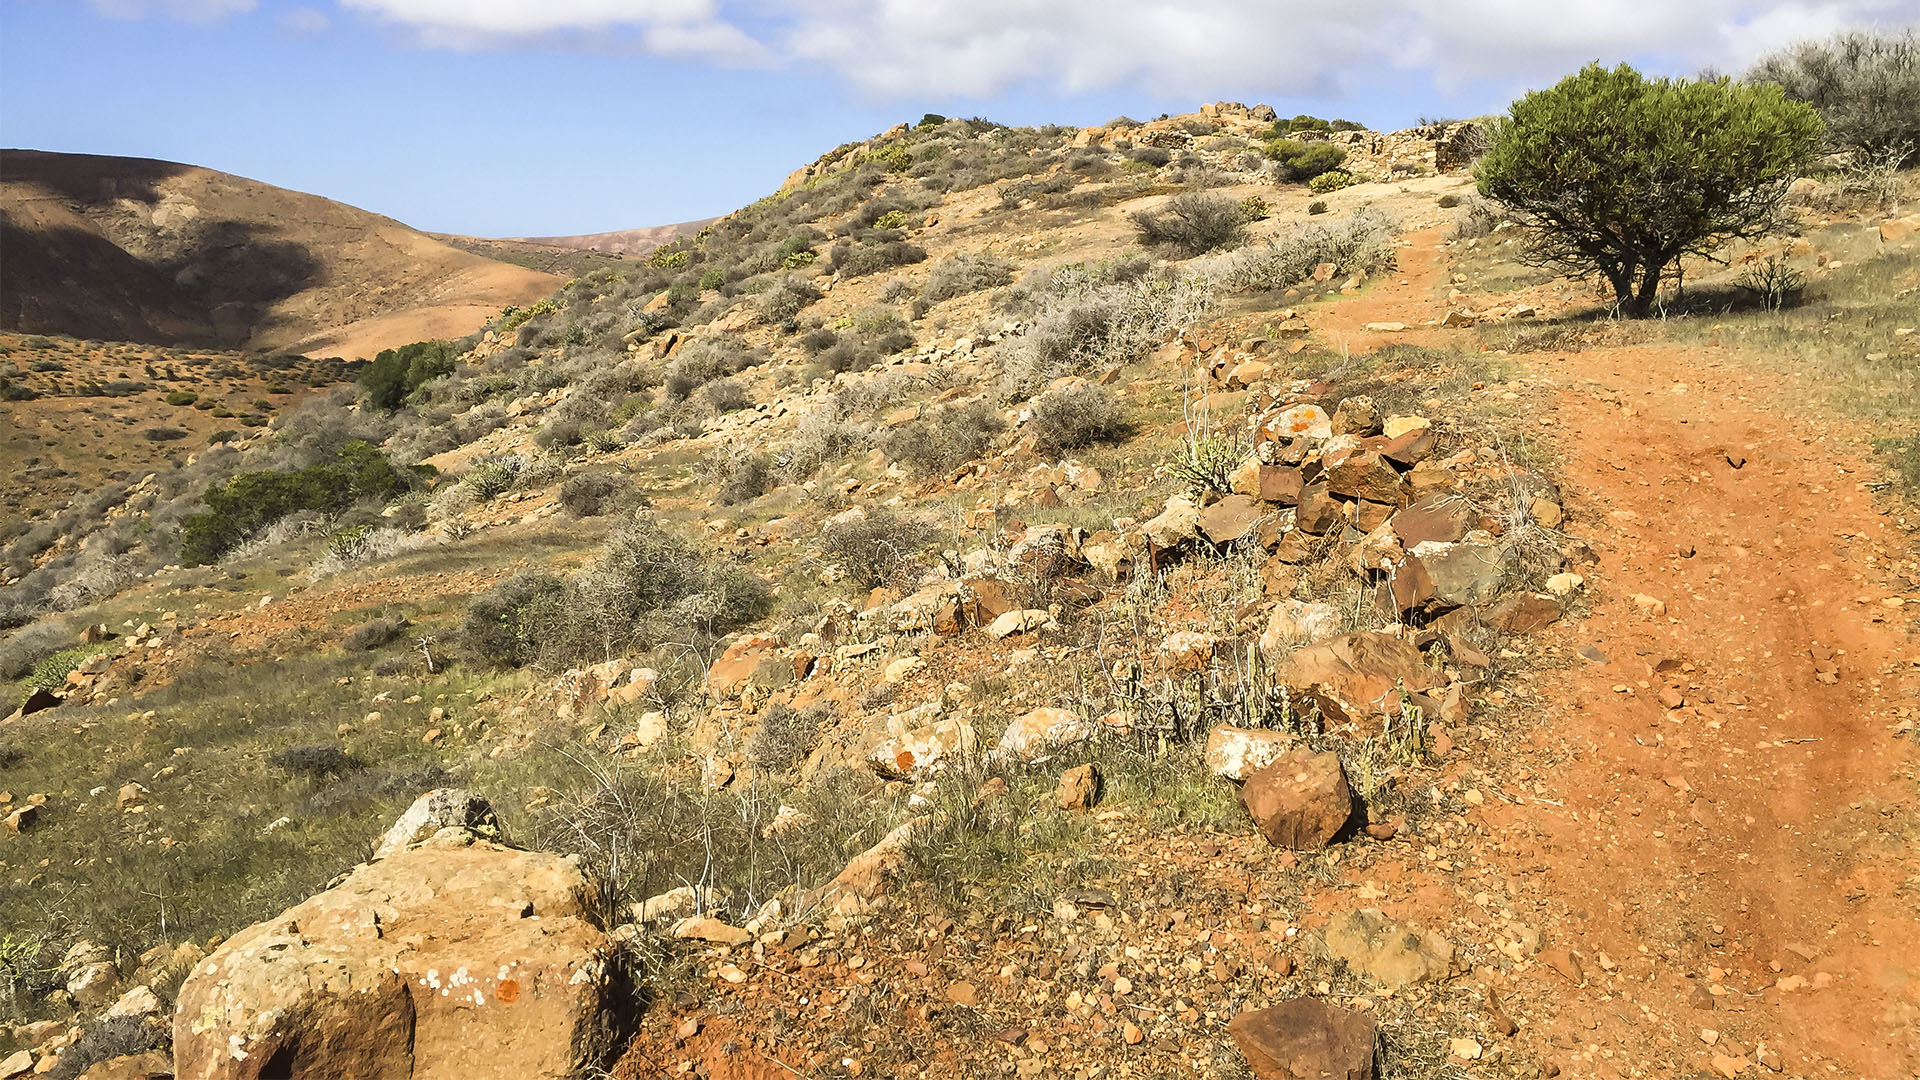 Wandern + Trekking auf Fuerteventura: Parra Medina einsam mit tollem Ausblick.